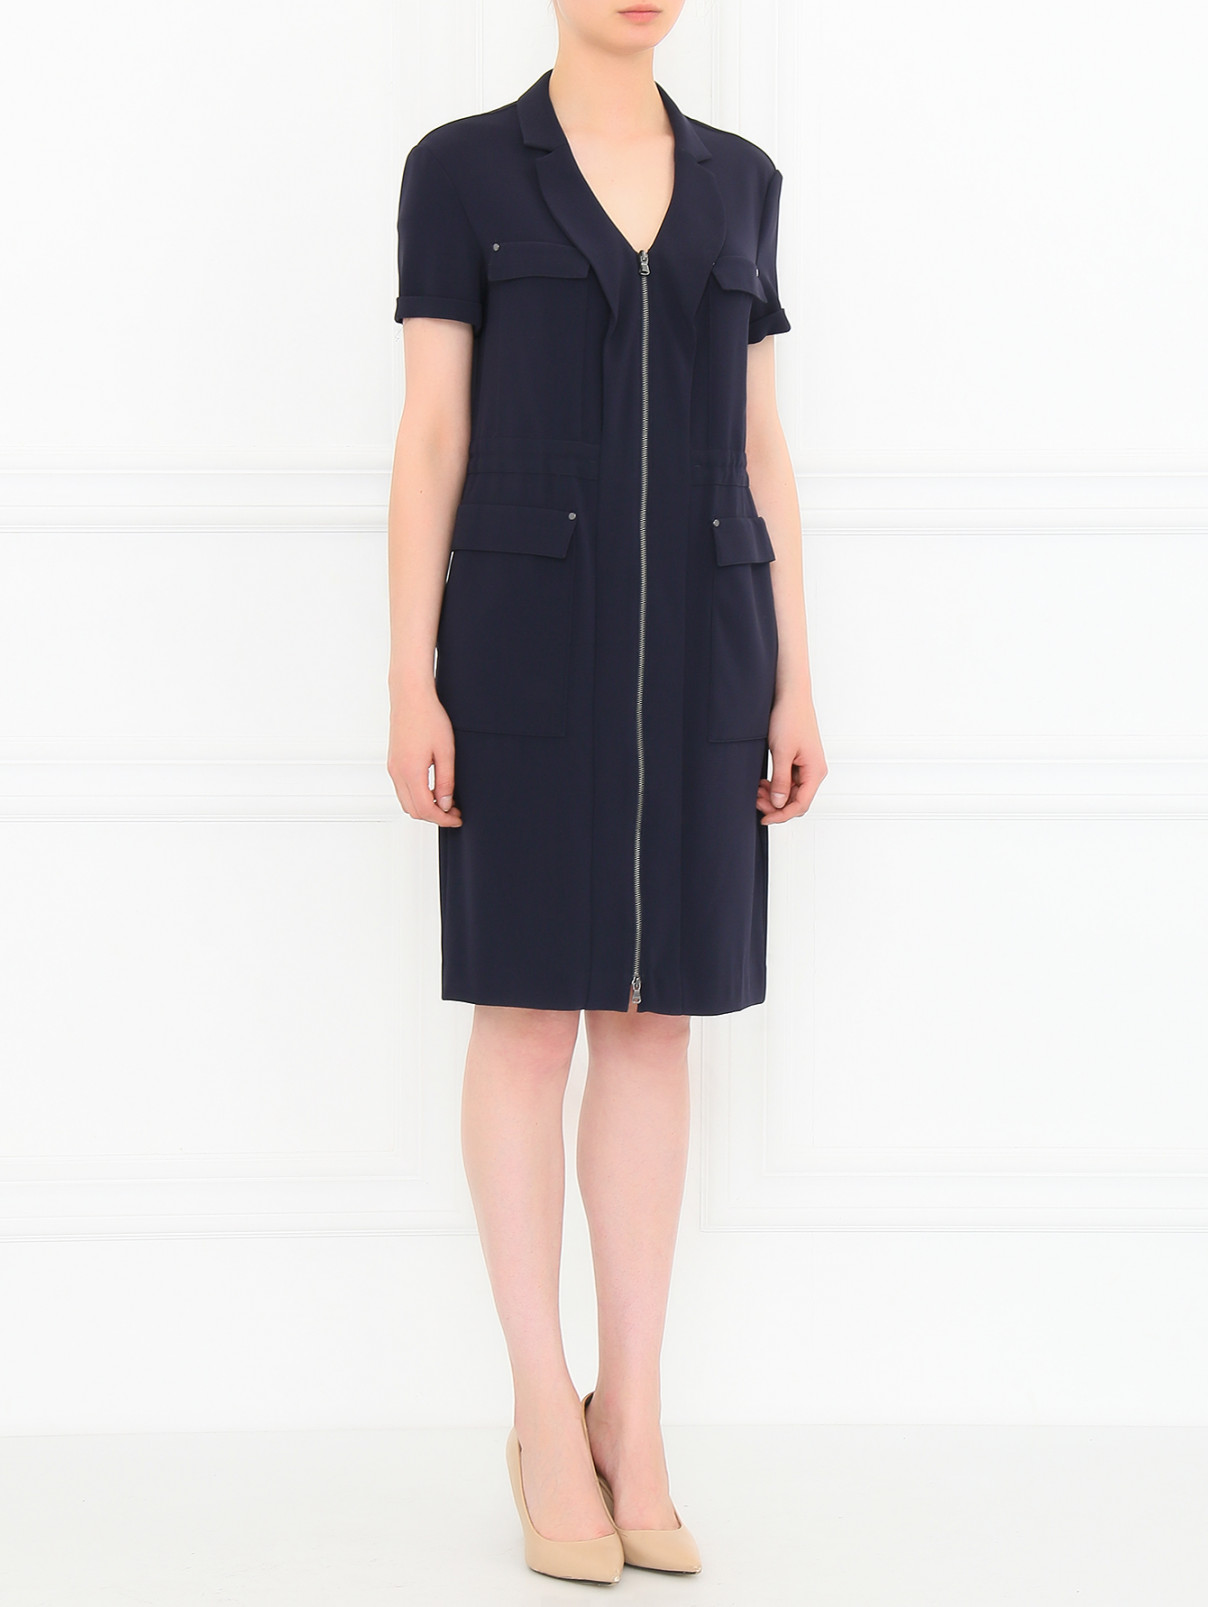 Платье на молнии с боковыми карманами Hugo Boss  –  Модель Общий вид  – Цвет:  Синий